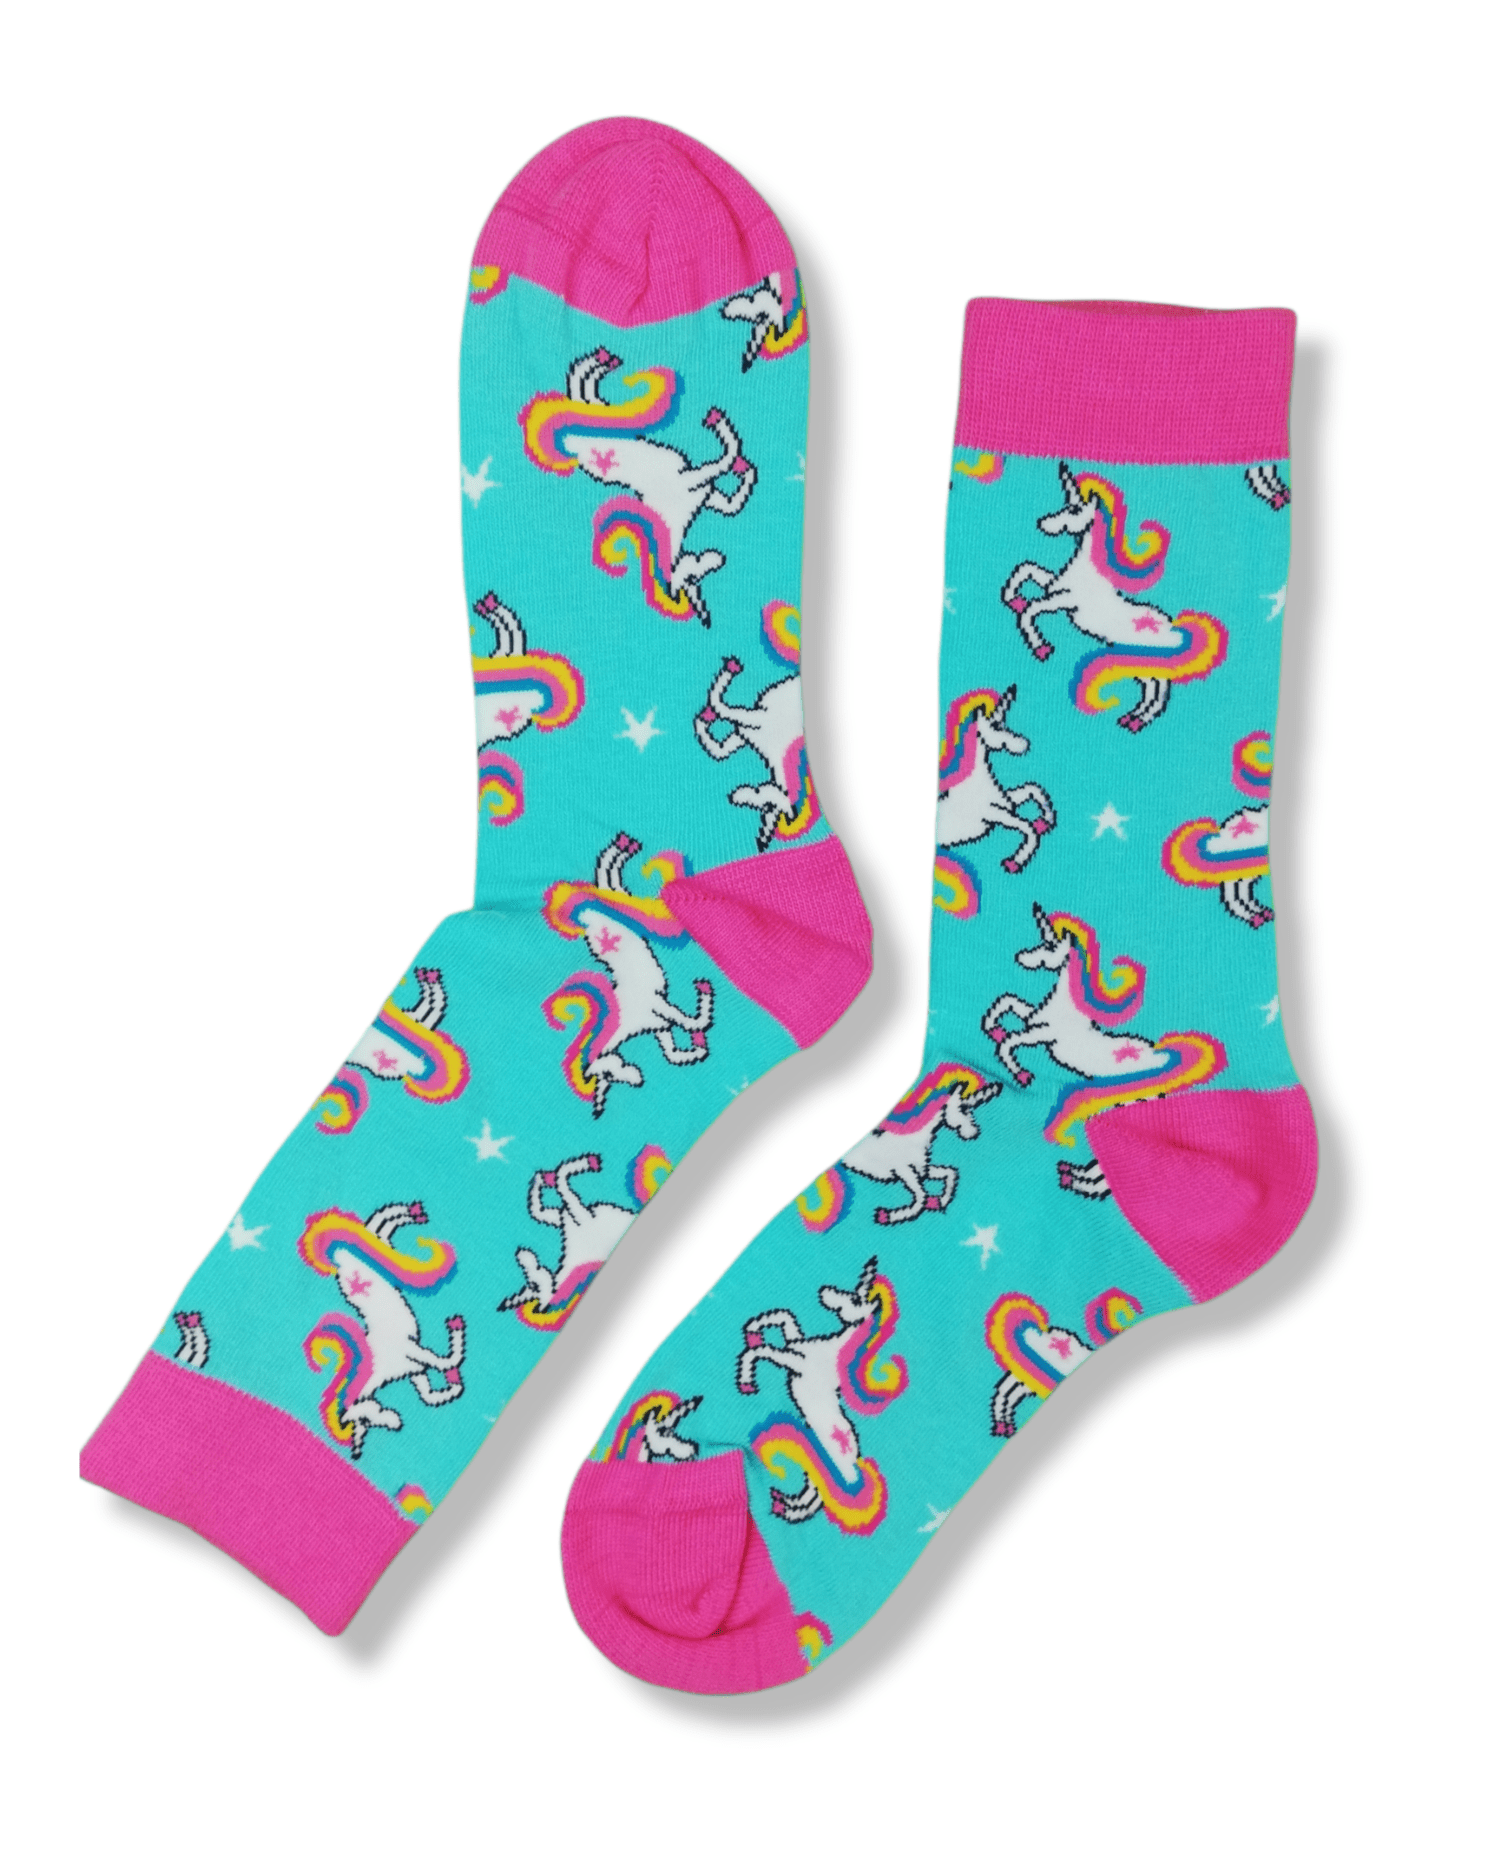 Calcetines unicornios para andar por casa con forro 4,99 €